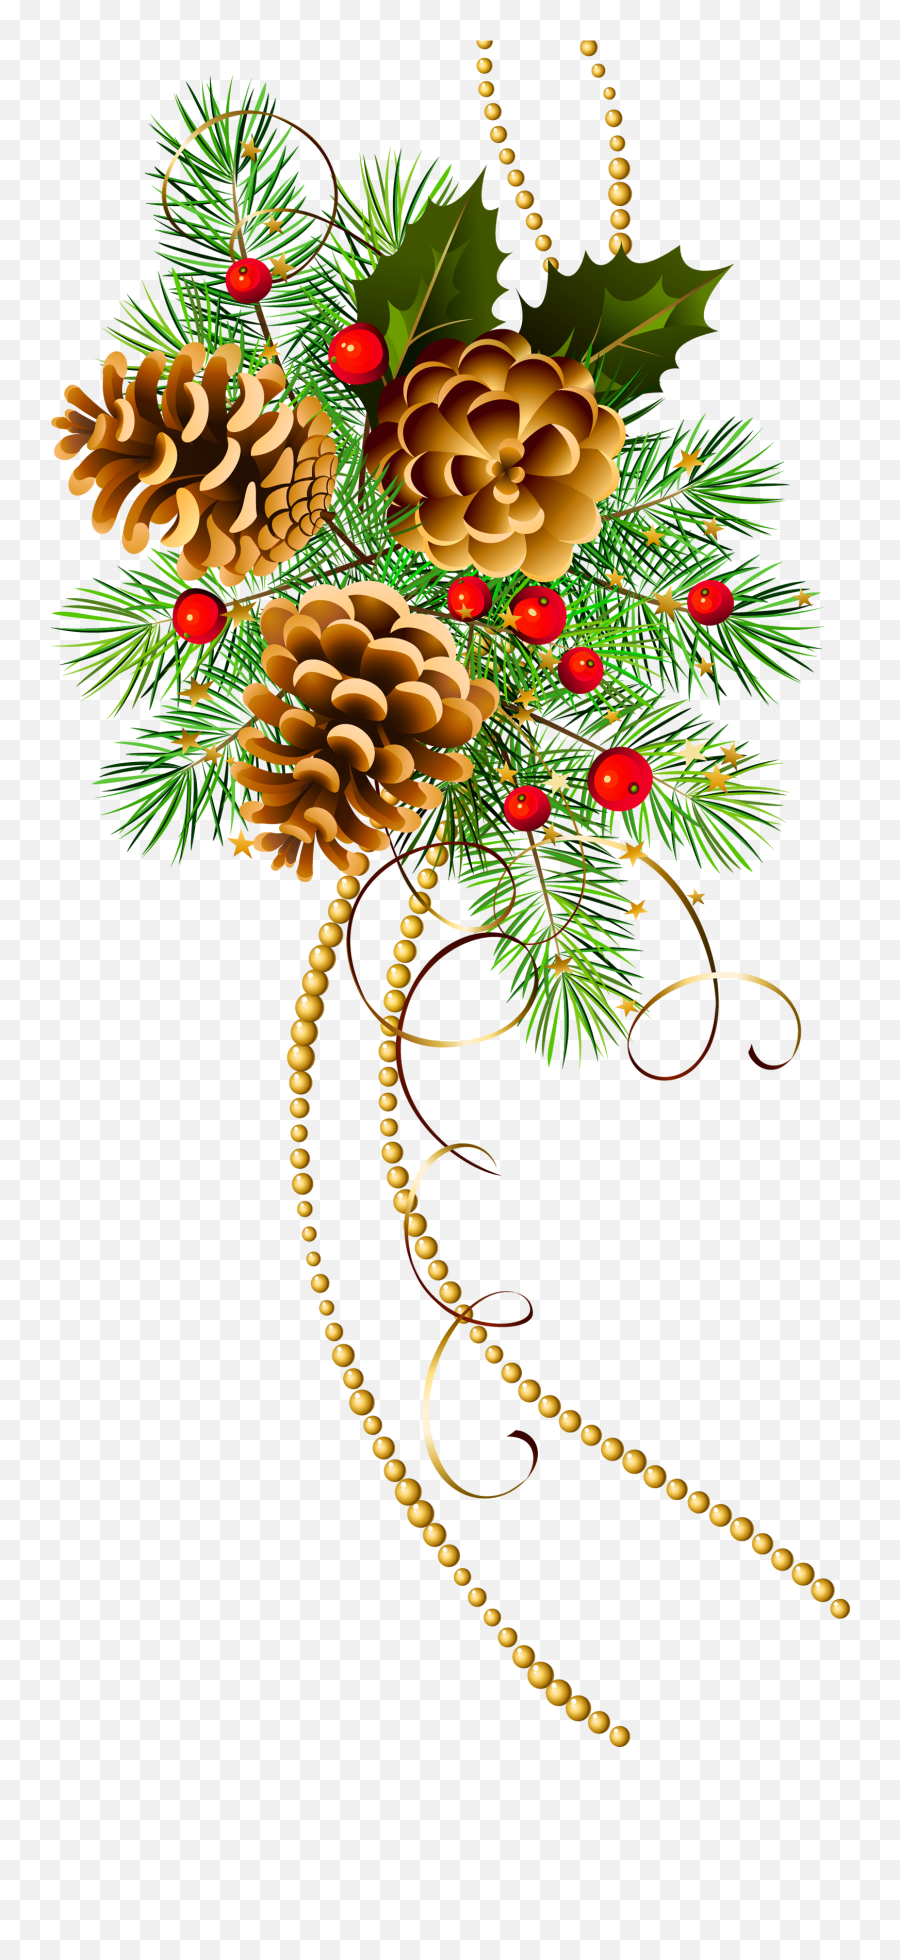 Poinsettia Clipart Watercolor Poinsettia Watercolor - Clip Art Christmas Pine Cone Emoji,Poinsettia Clipart